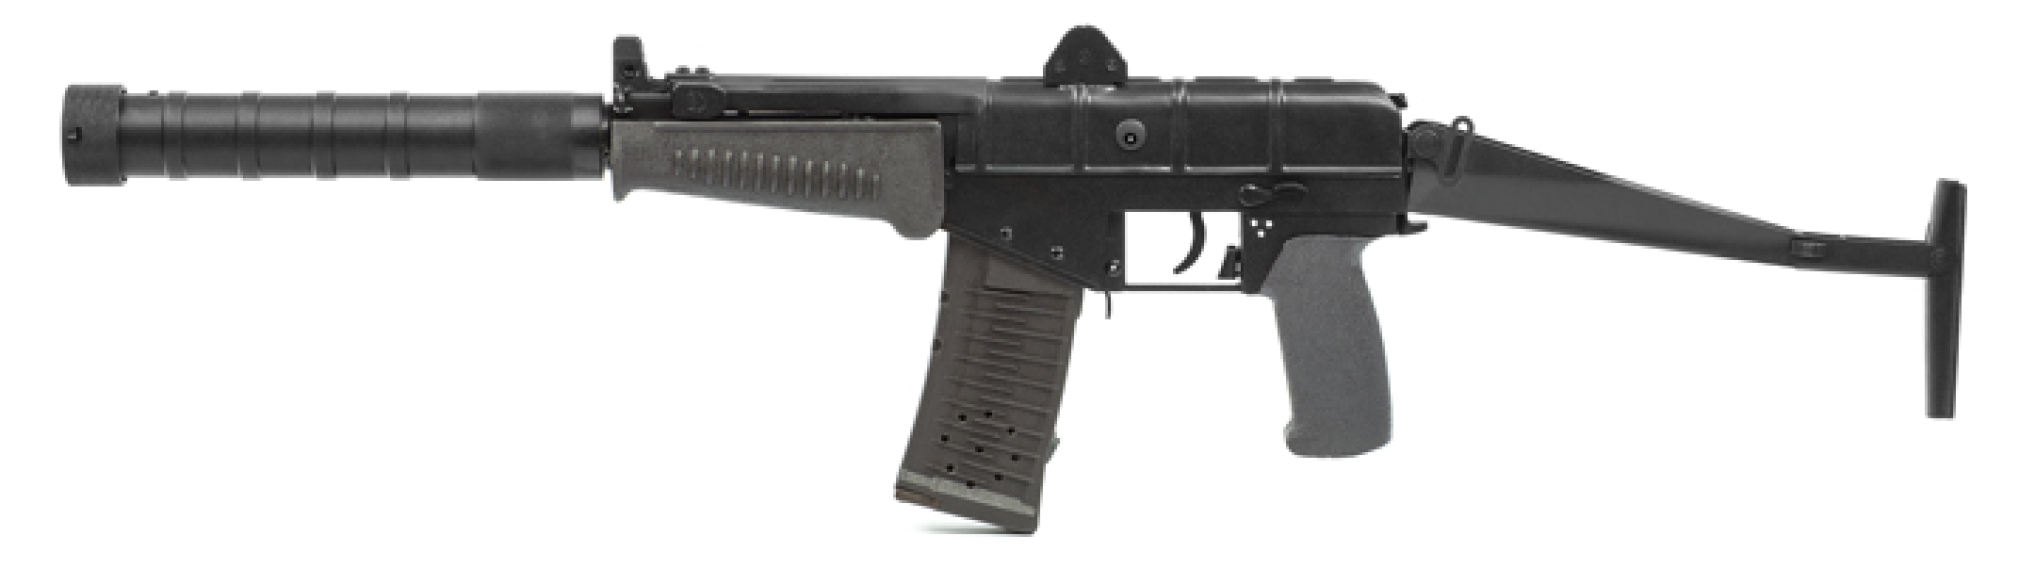 Штурмовая винтовка СР-3 «ВИХРЬ» серии «PRACTICAL»